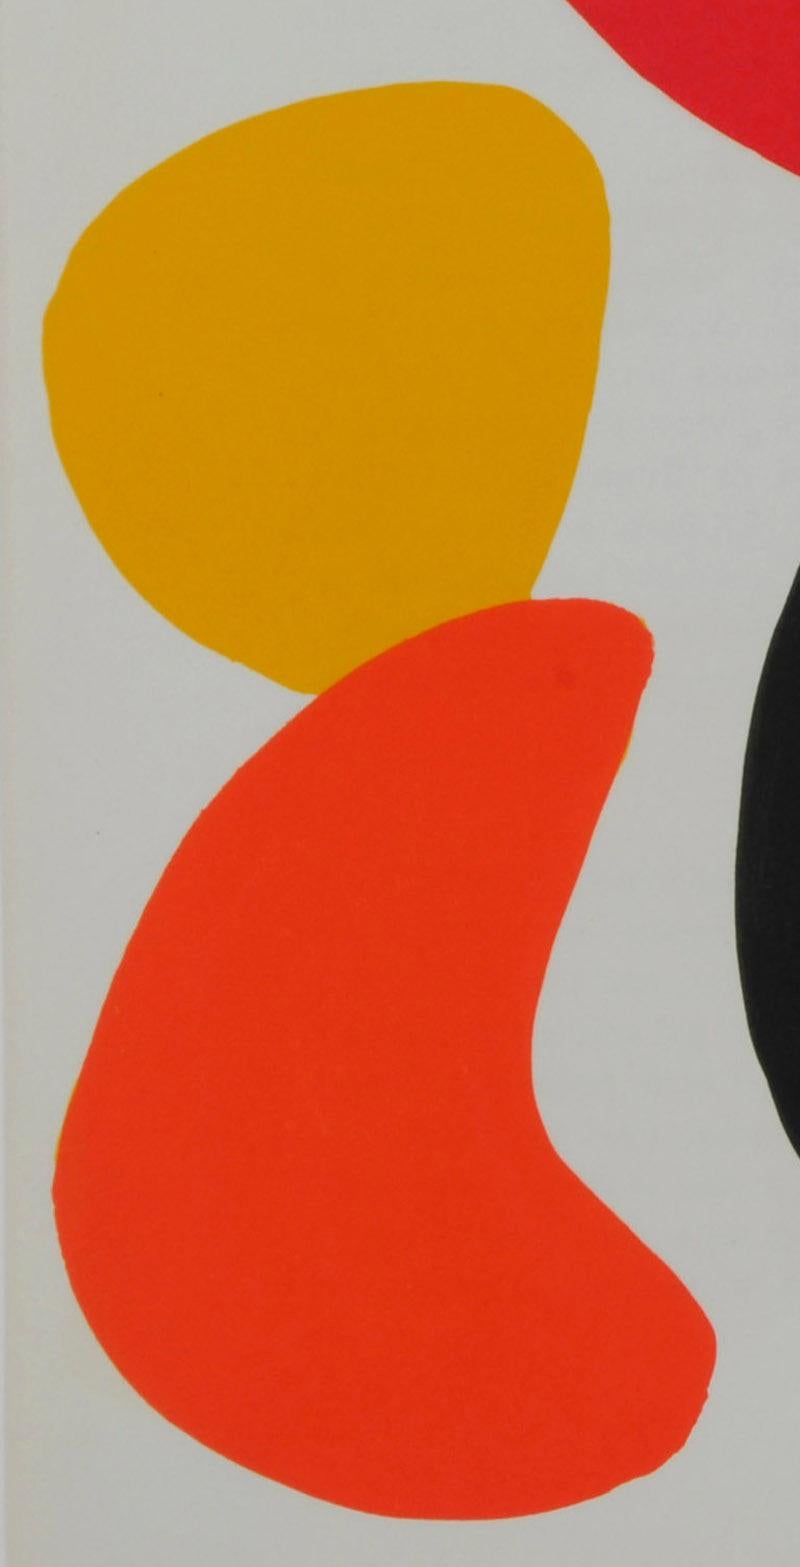 Untitled (DLM, 1970) - Print by Alexander Calder